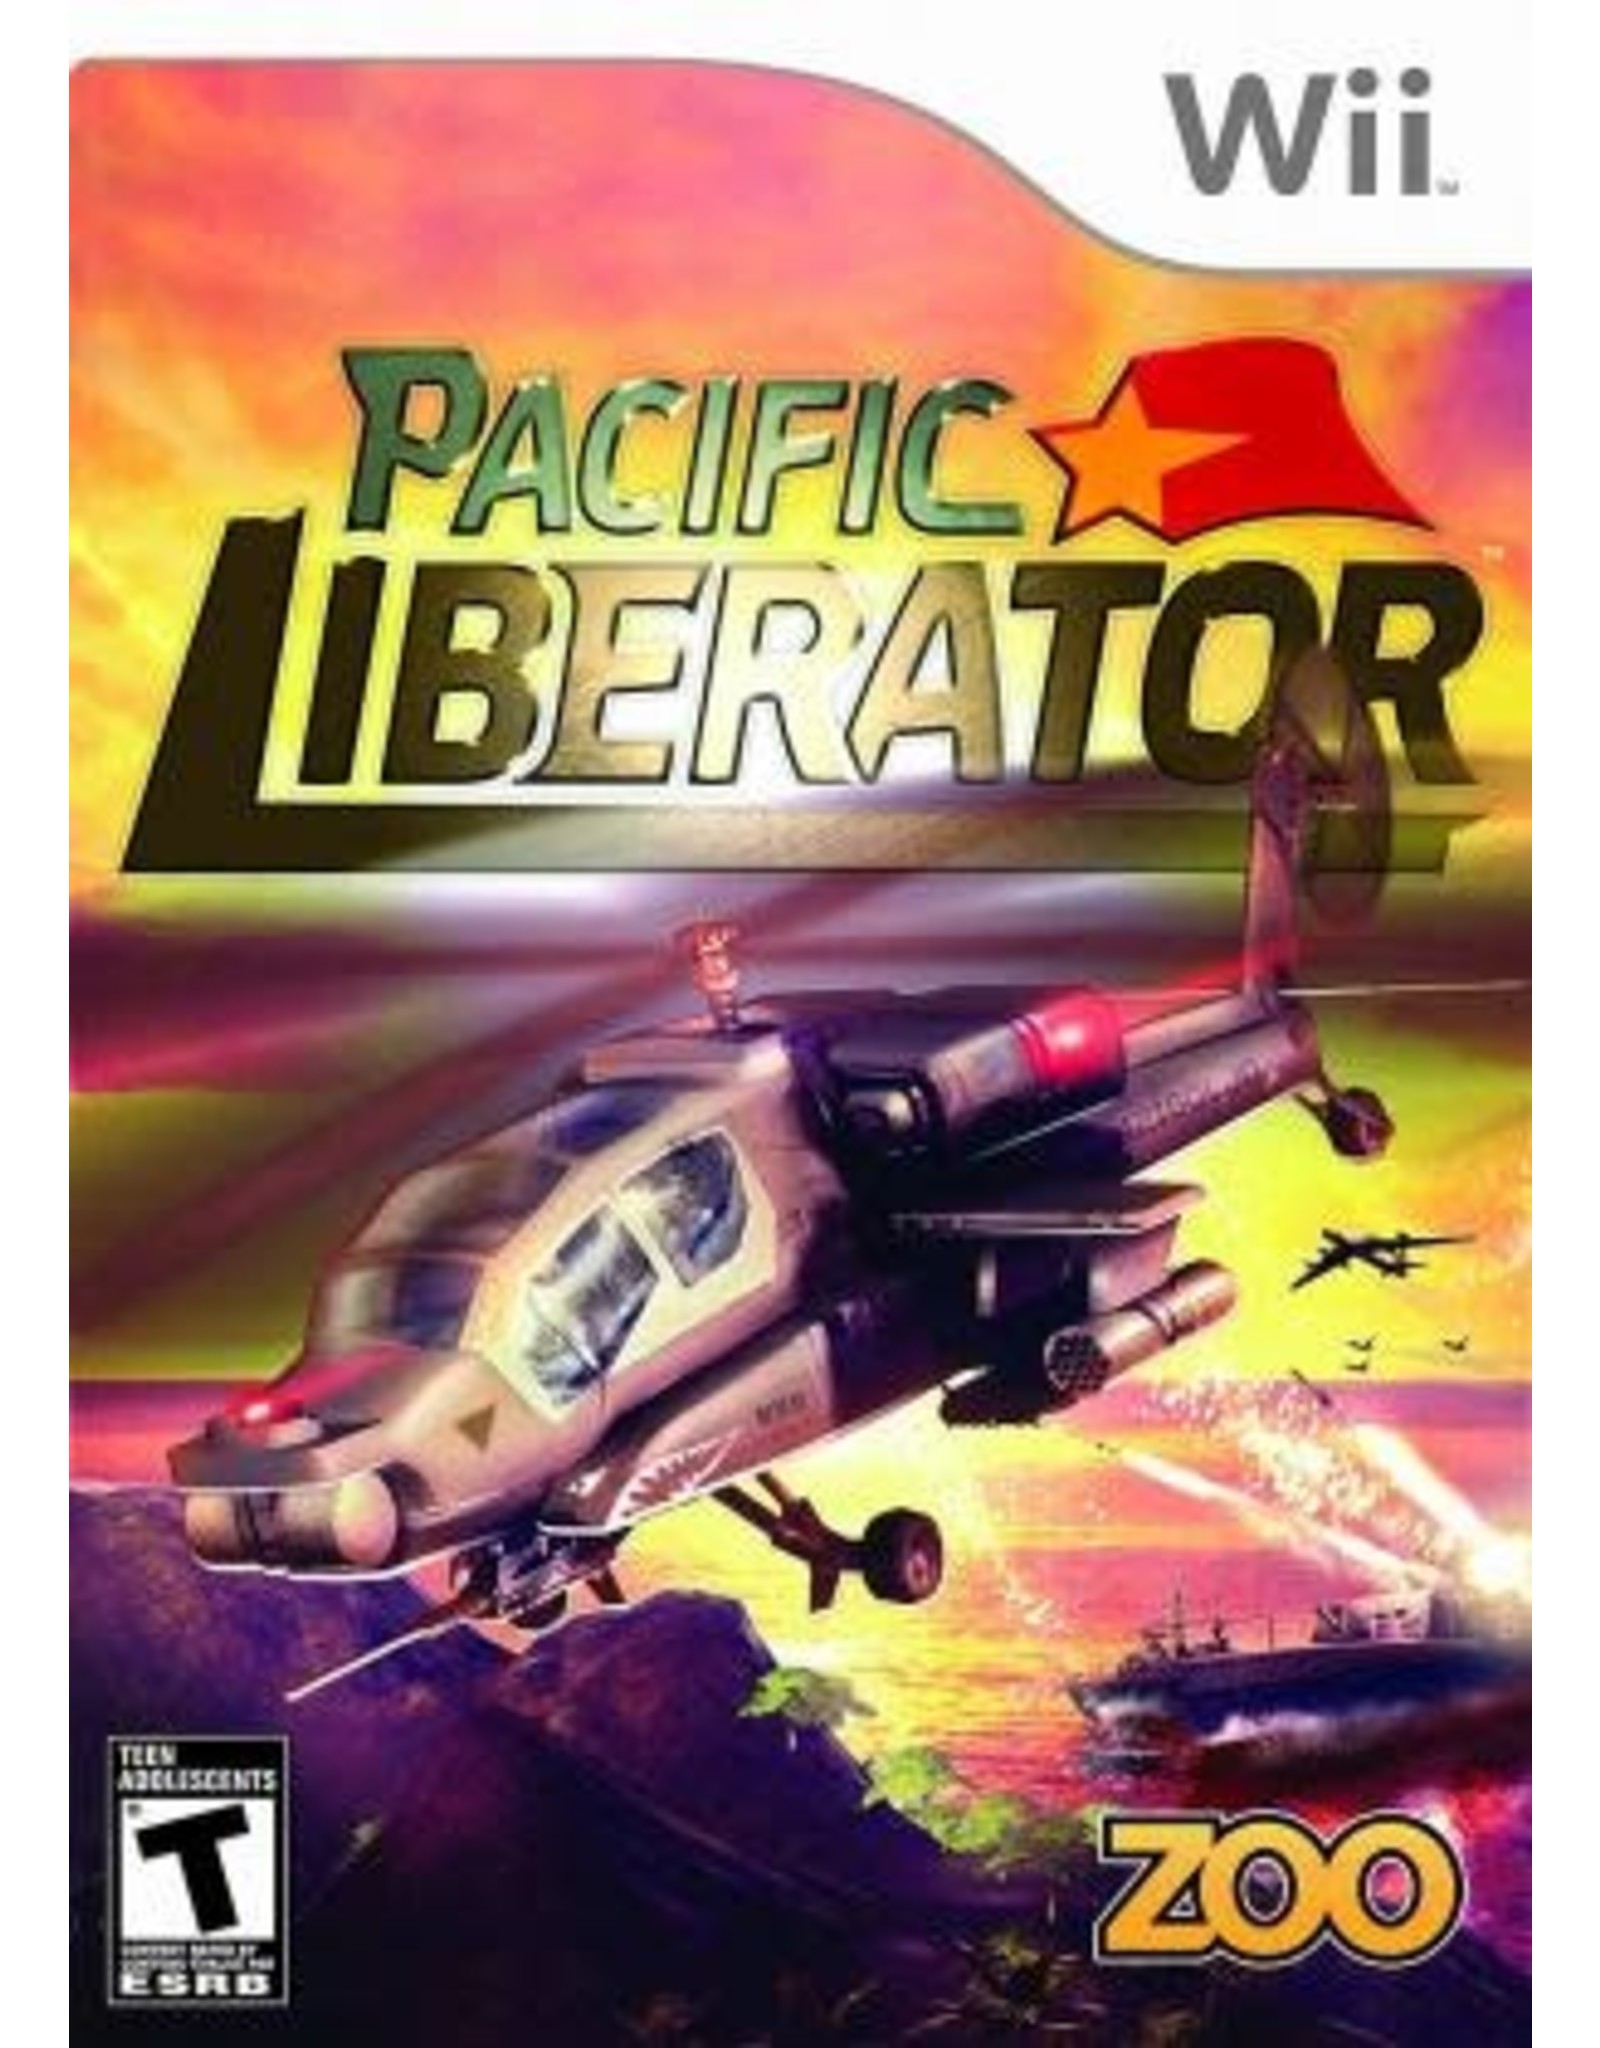 Wii Pacific Liberator (CiB)